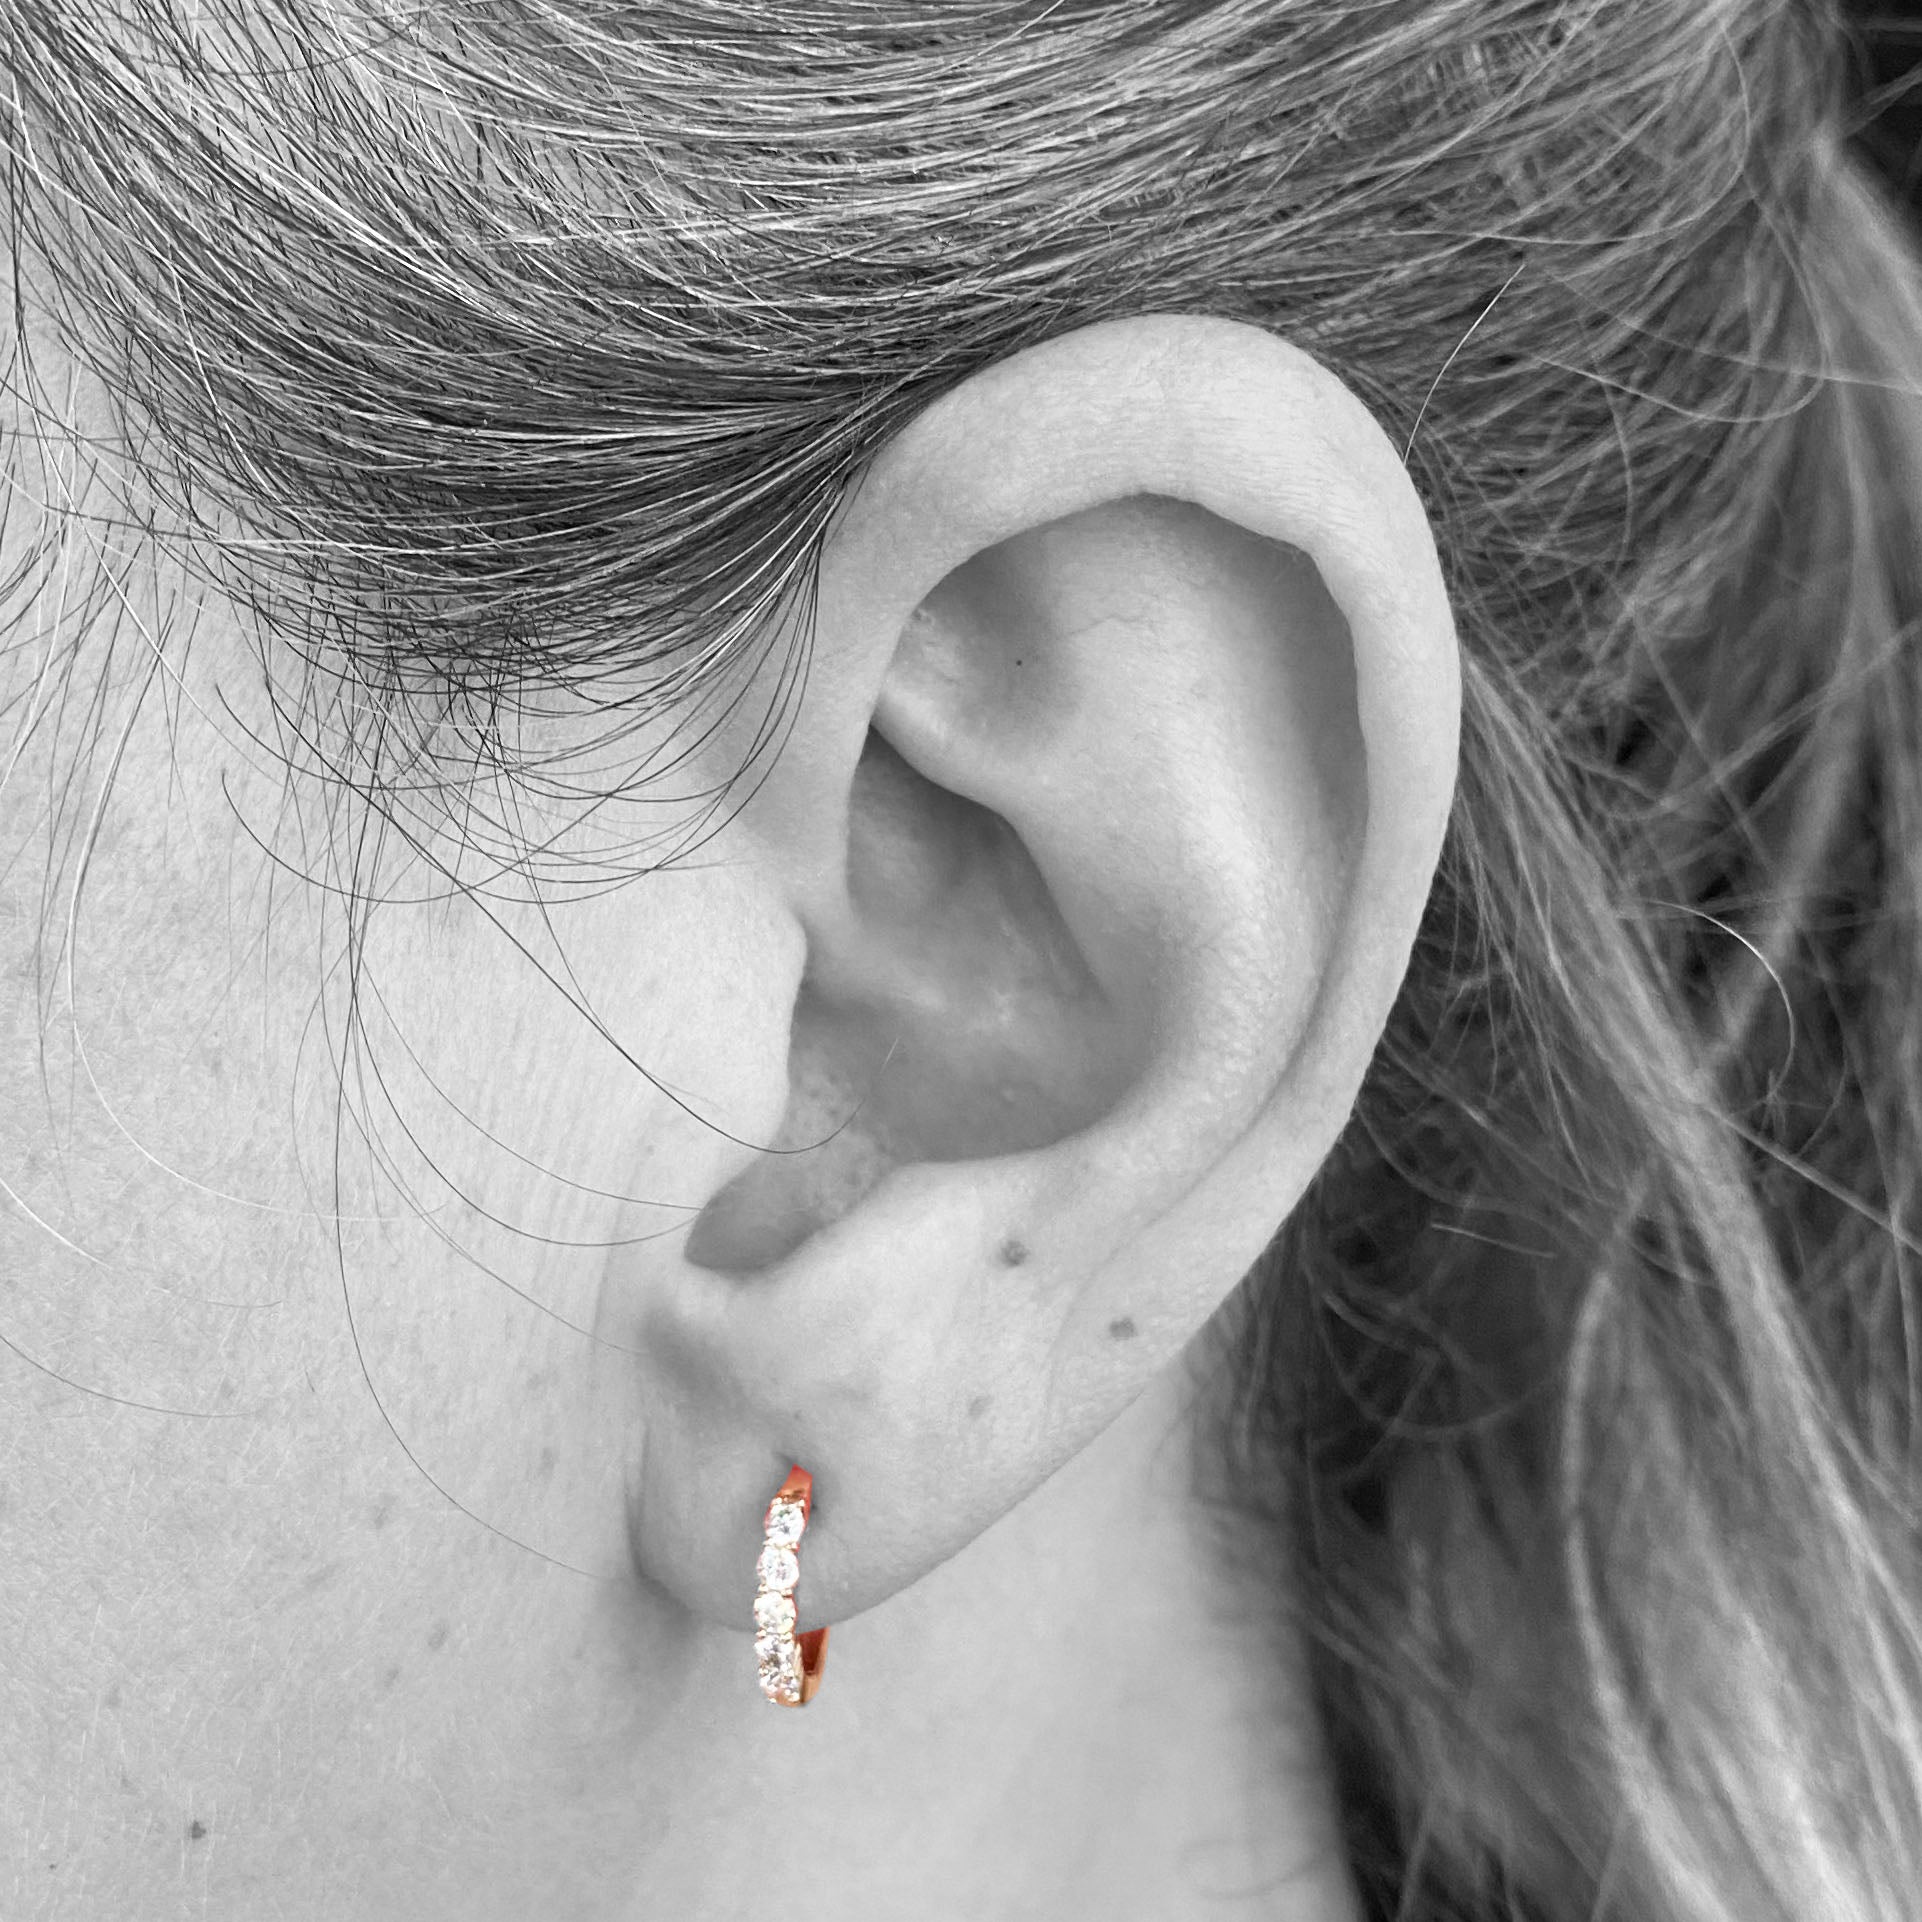 14k Rose Diamond Hoop Earrings - eklektic jewelry studio